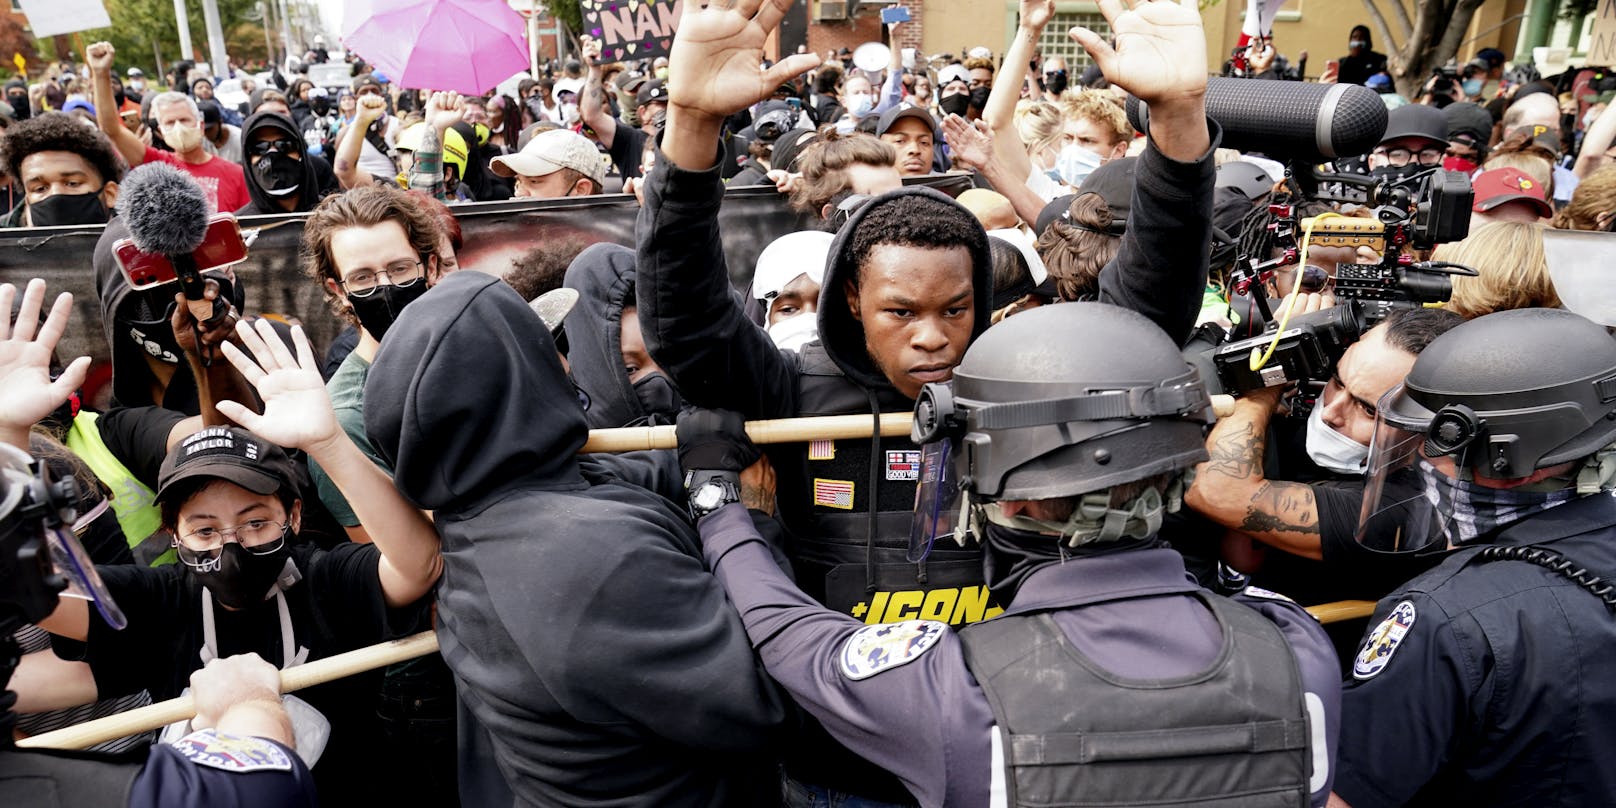 In Louisville kam es in der Nacht zu Zusammenstößen zwischen Polizei und Demonstranten.